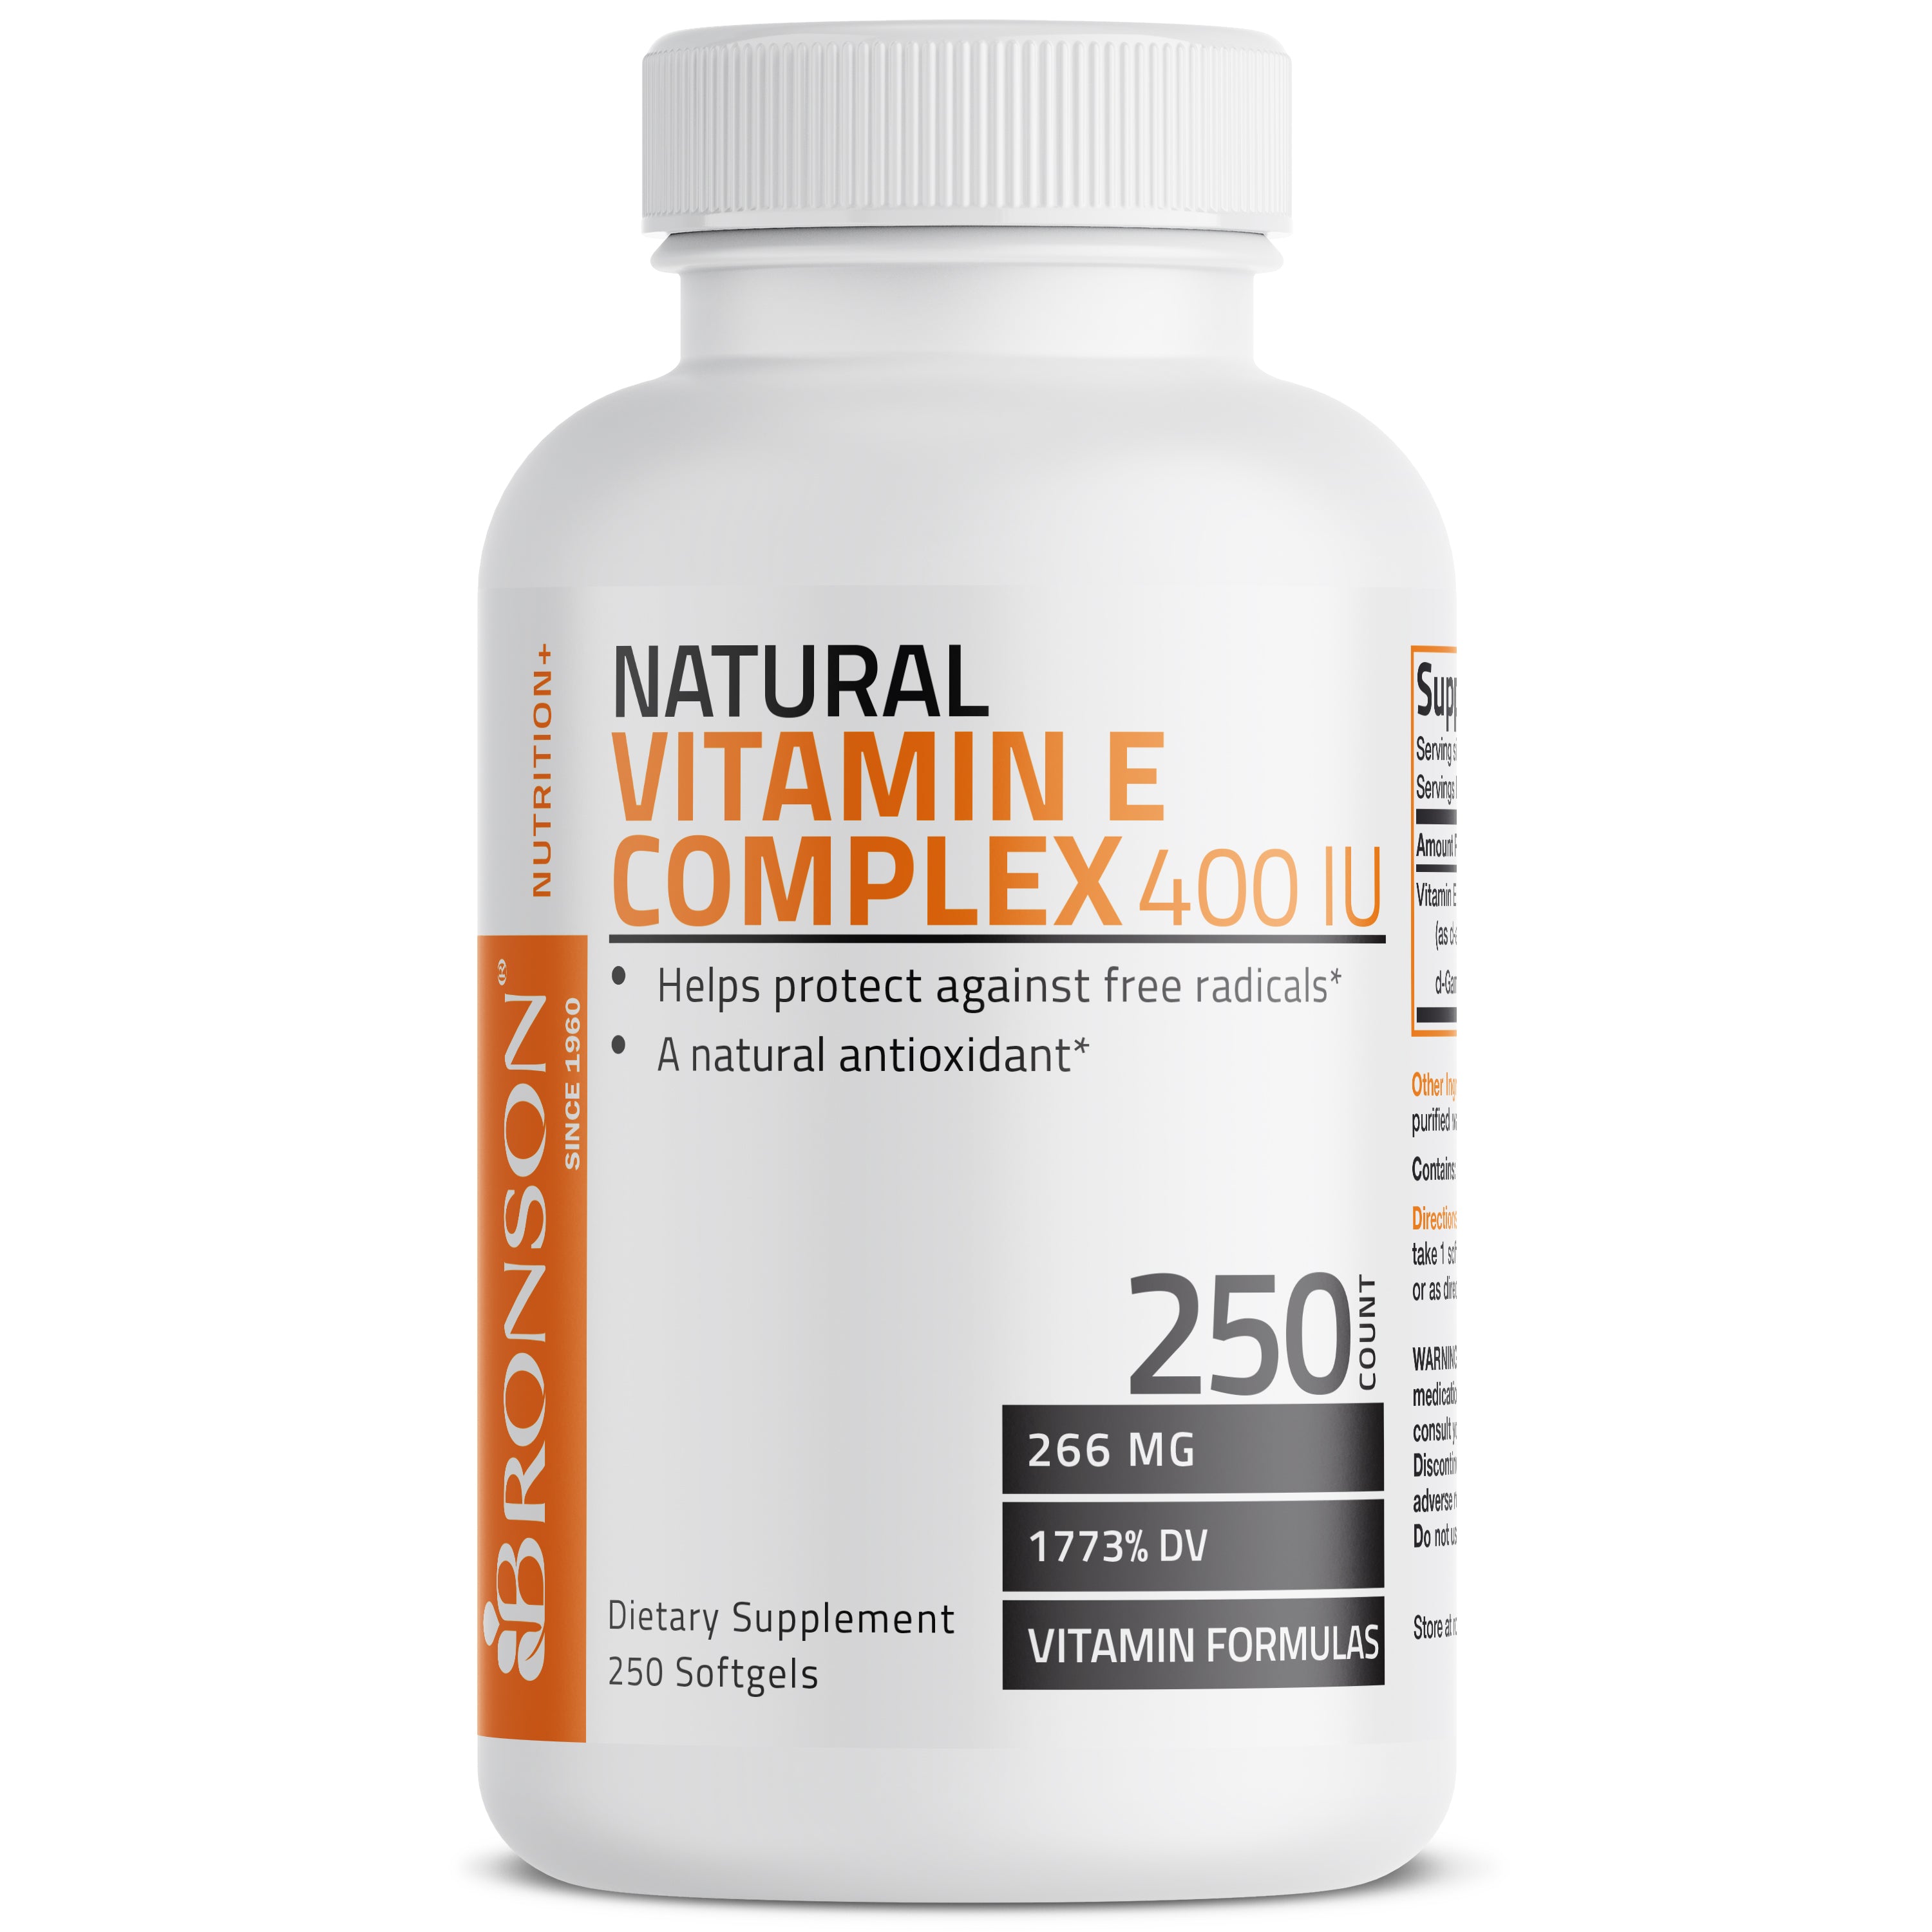 Natural Vitamin E Complex - 400 IU view 6 of 8